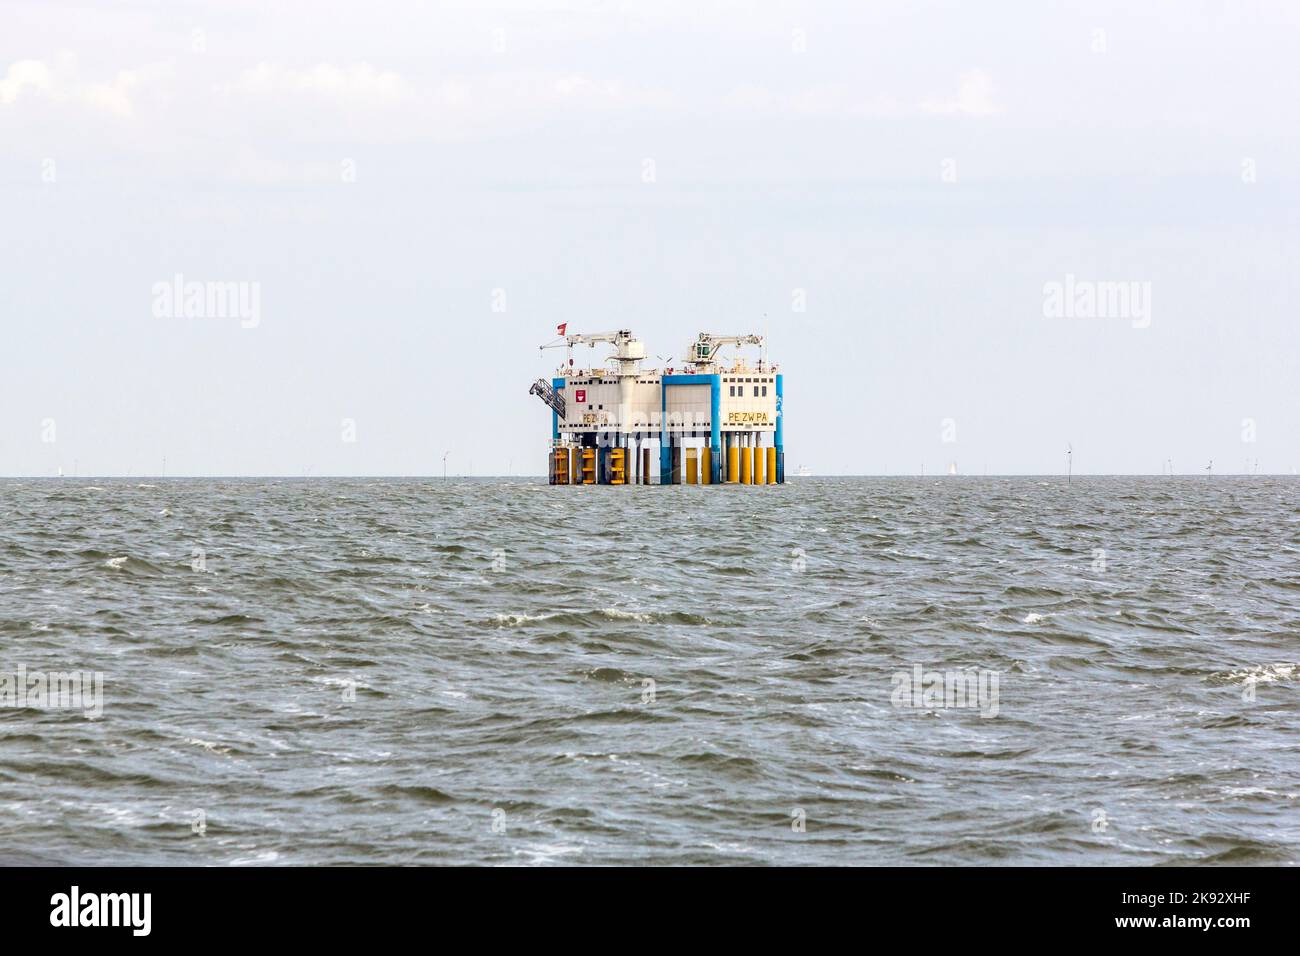 HARLINGEN, NEDERLANDE - 10 AOÛT 2014 : plate-forme pétrolière offshore près de Harlingen, Nederlande. La production de pétrole est un facteur économique majeur aux pays-Bas. Banque D'Images